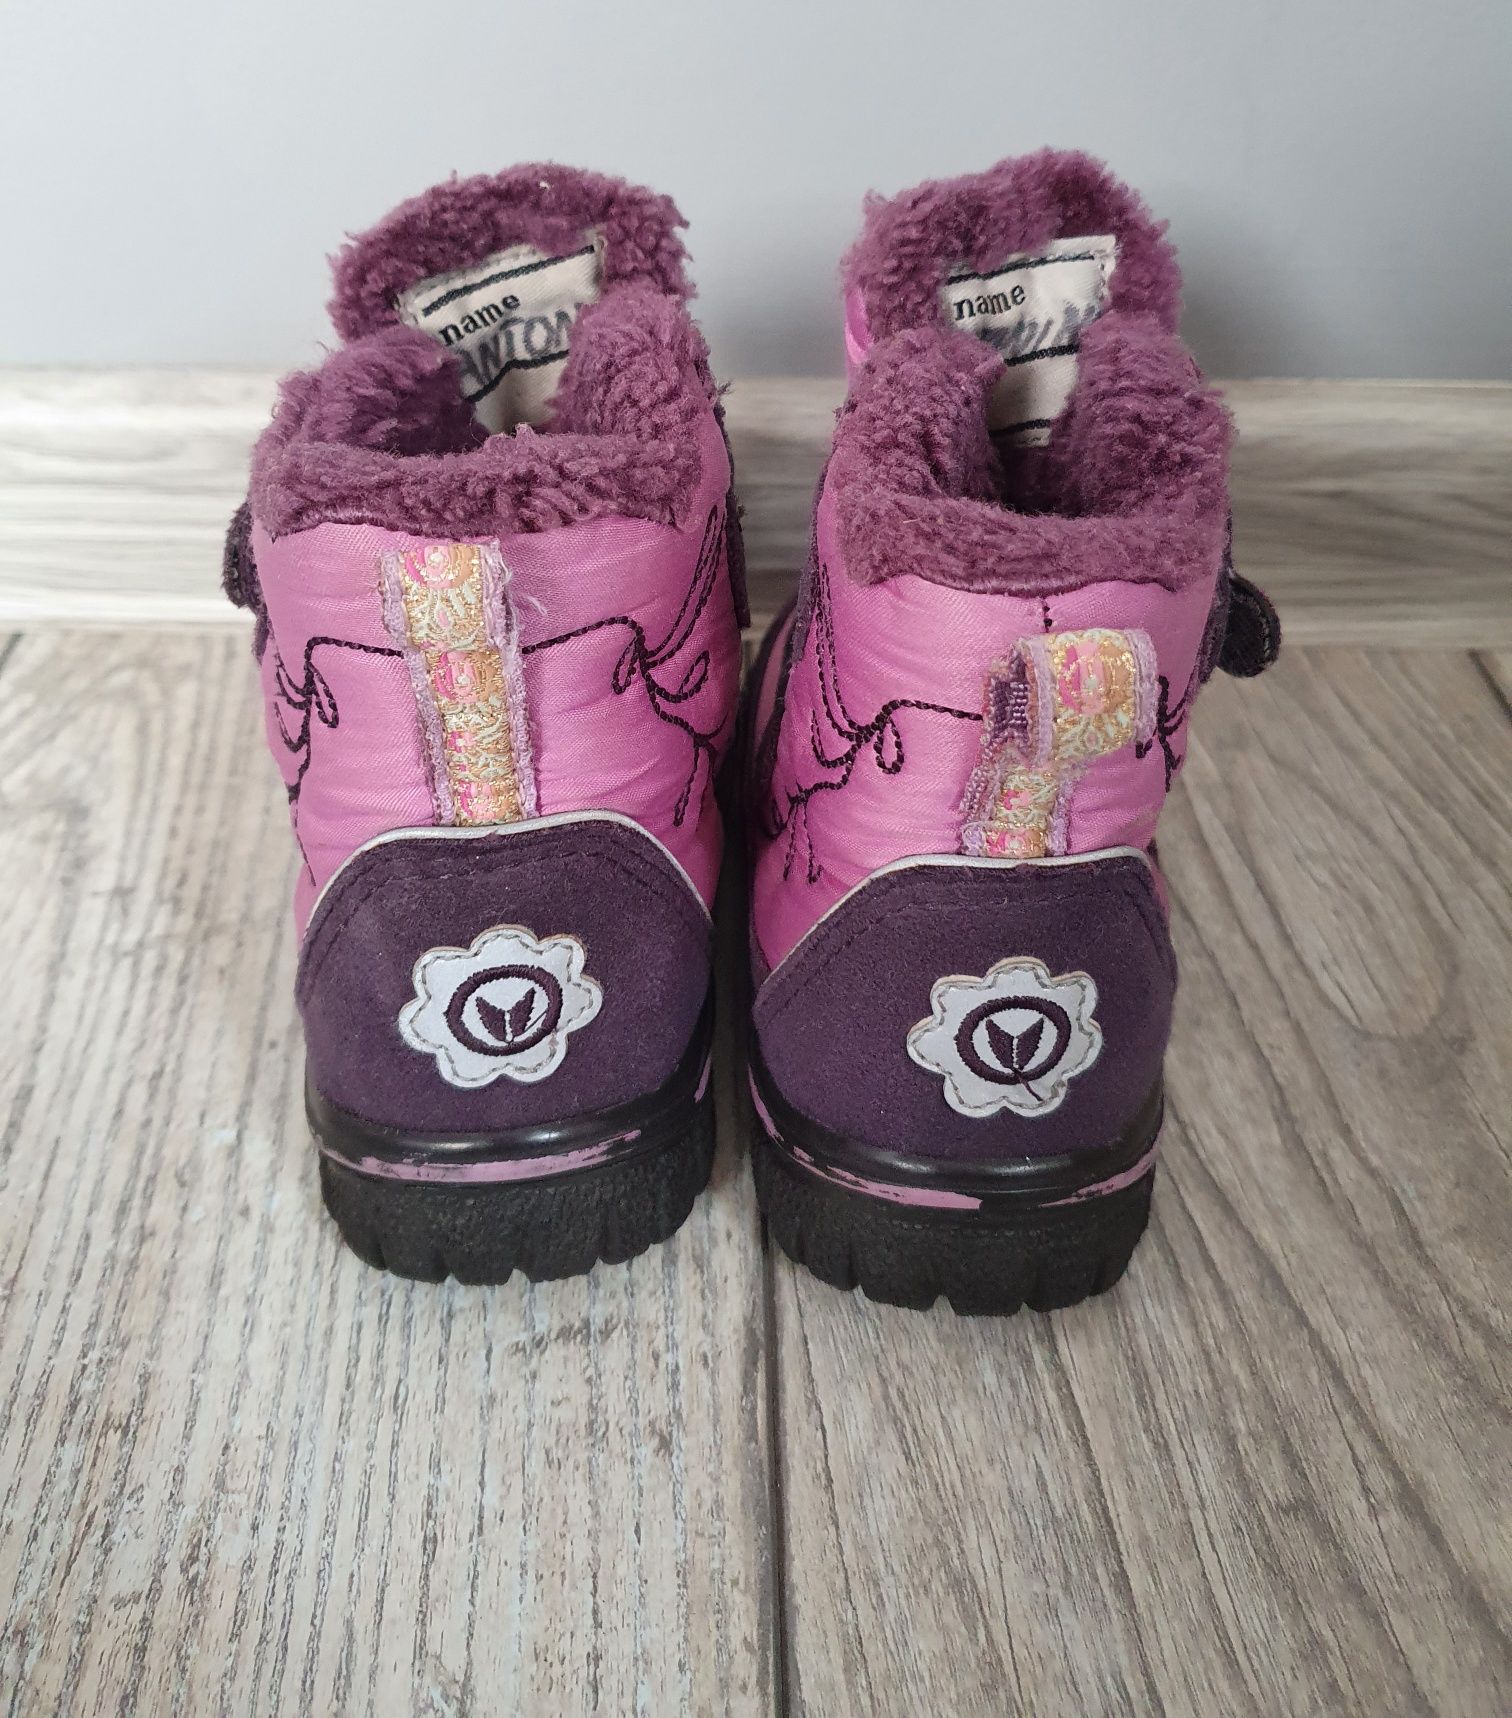 Buty zimowe / śniegowce / kozaki / botki Viking Gore-Tex 20 13.5cm